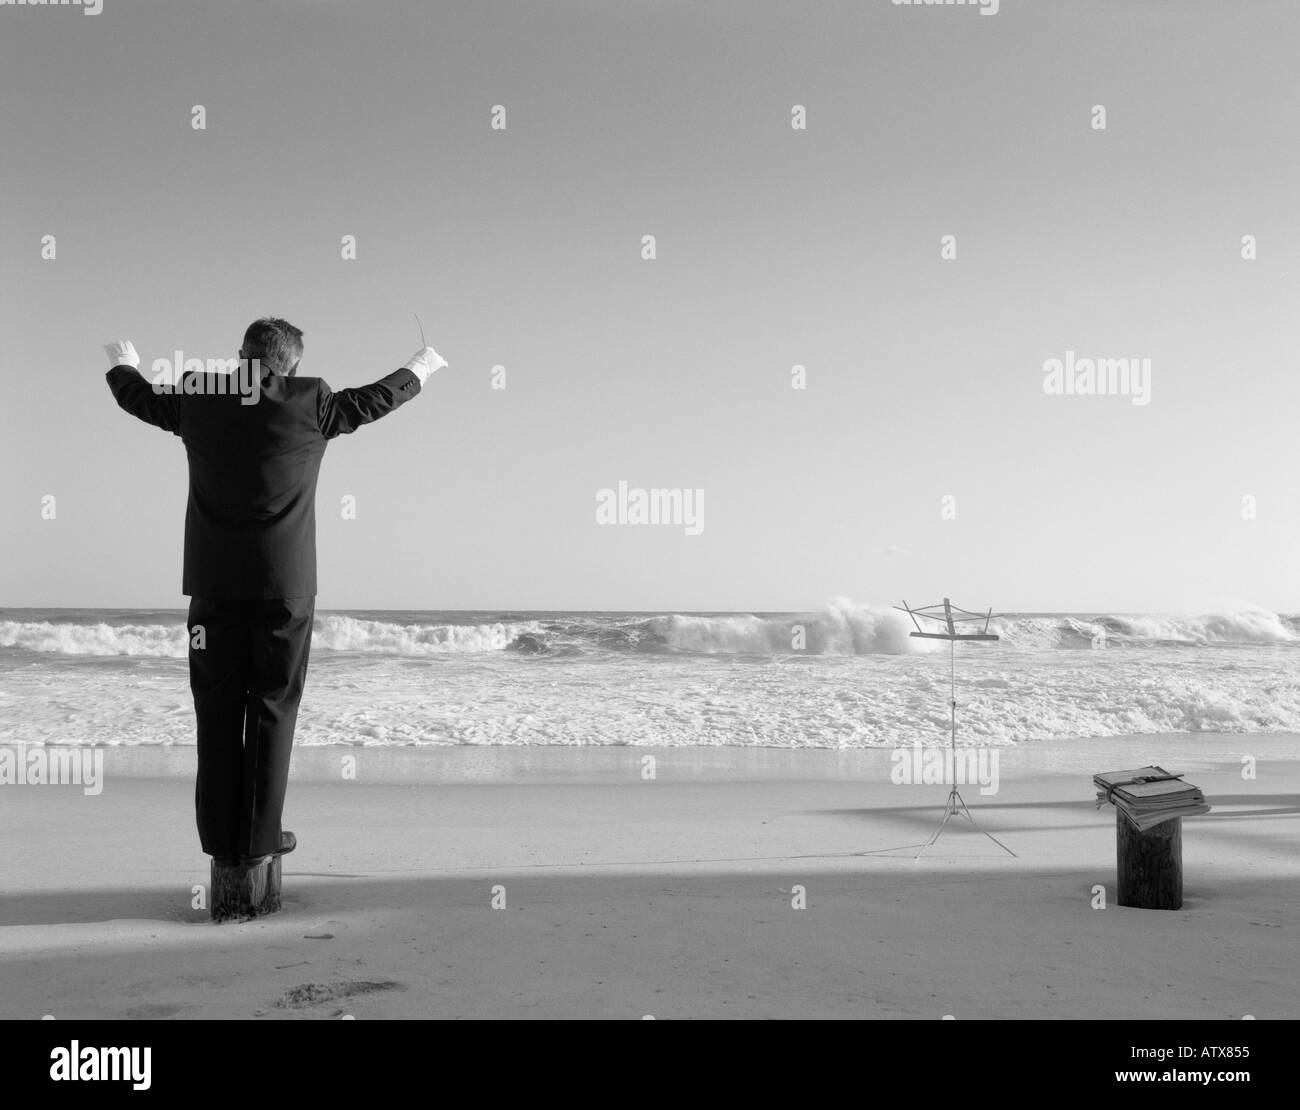 Hombre de 40-44, 45-49, 50-54, 55-60, 60-65, 65-69, años, dirigiendo la orquesta invisible en la playa (vista trasera), Hamptons, Nueva York, EE.UU. Foto de stock